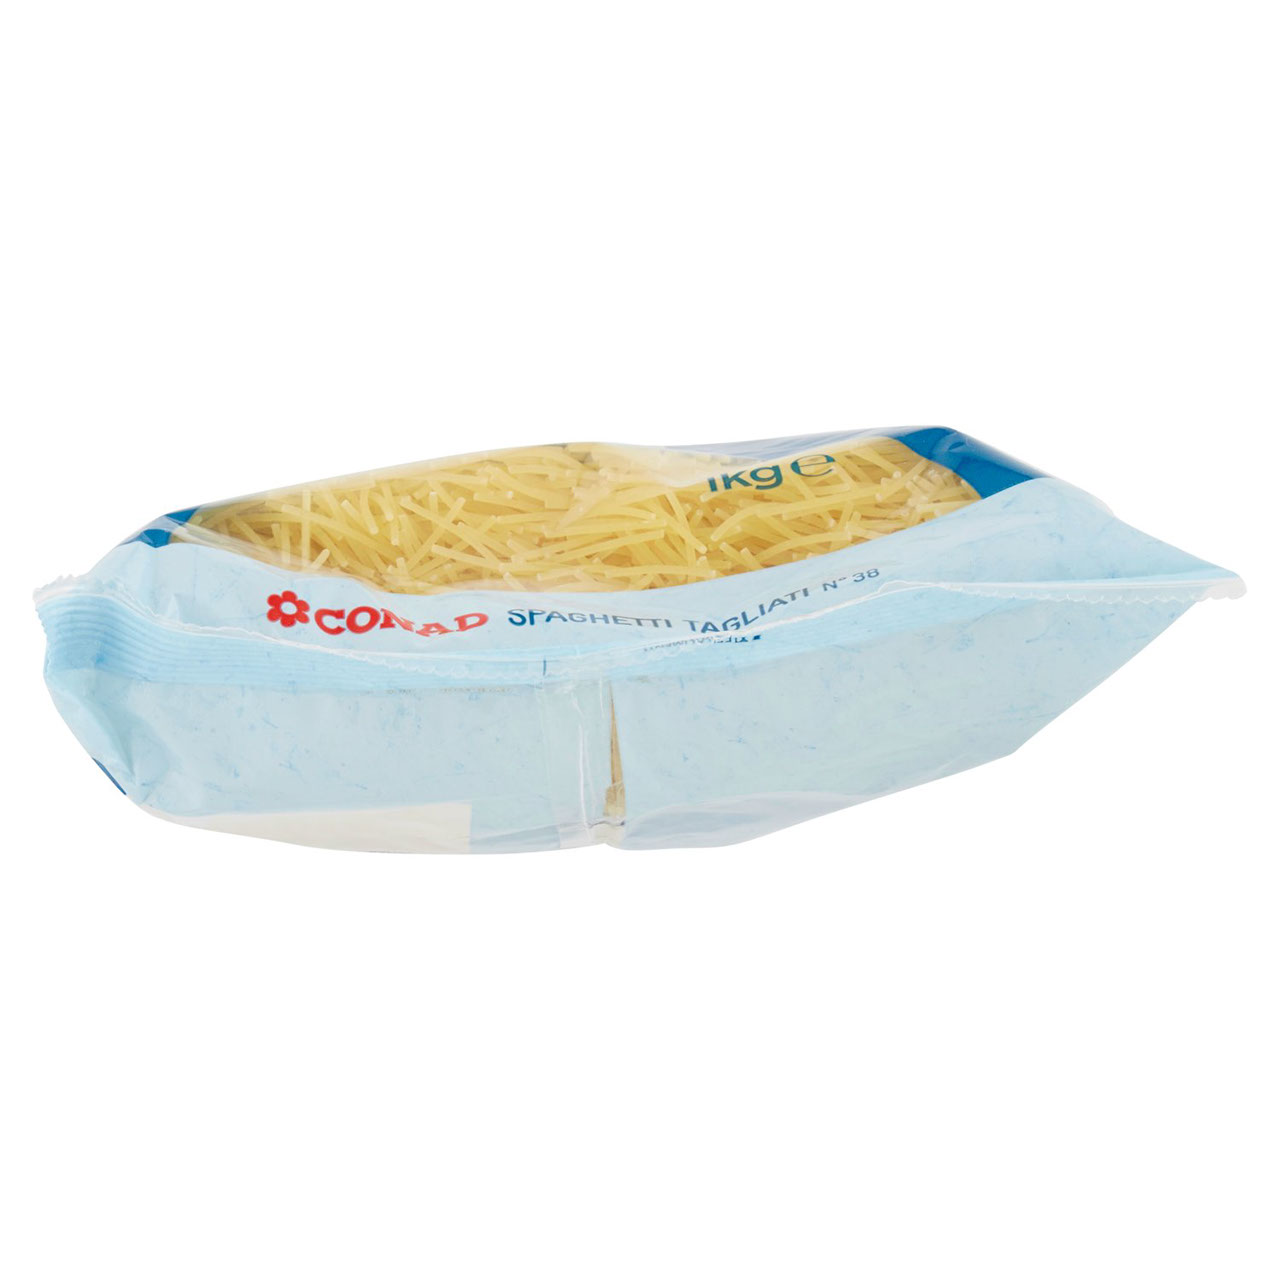 Spaghetti Tagliati 1 kg Conad in vendita online